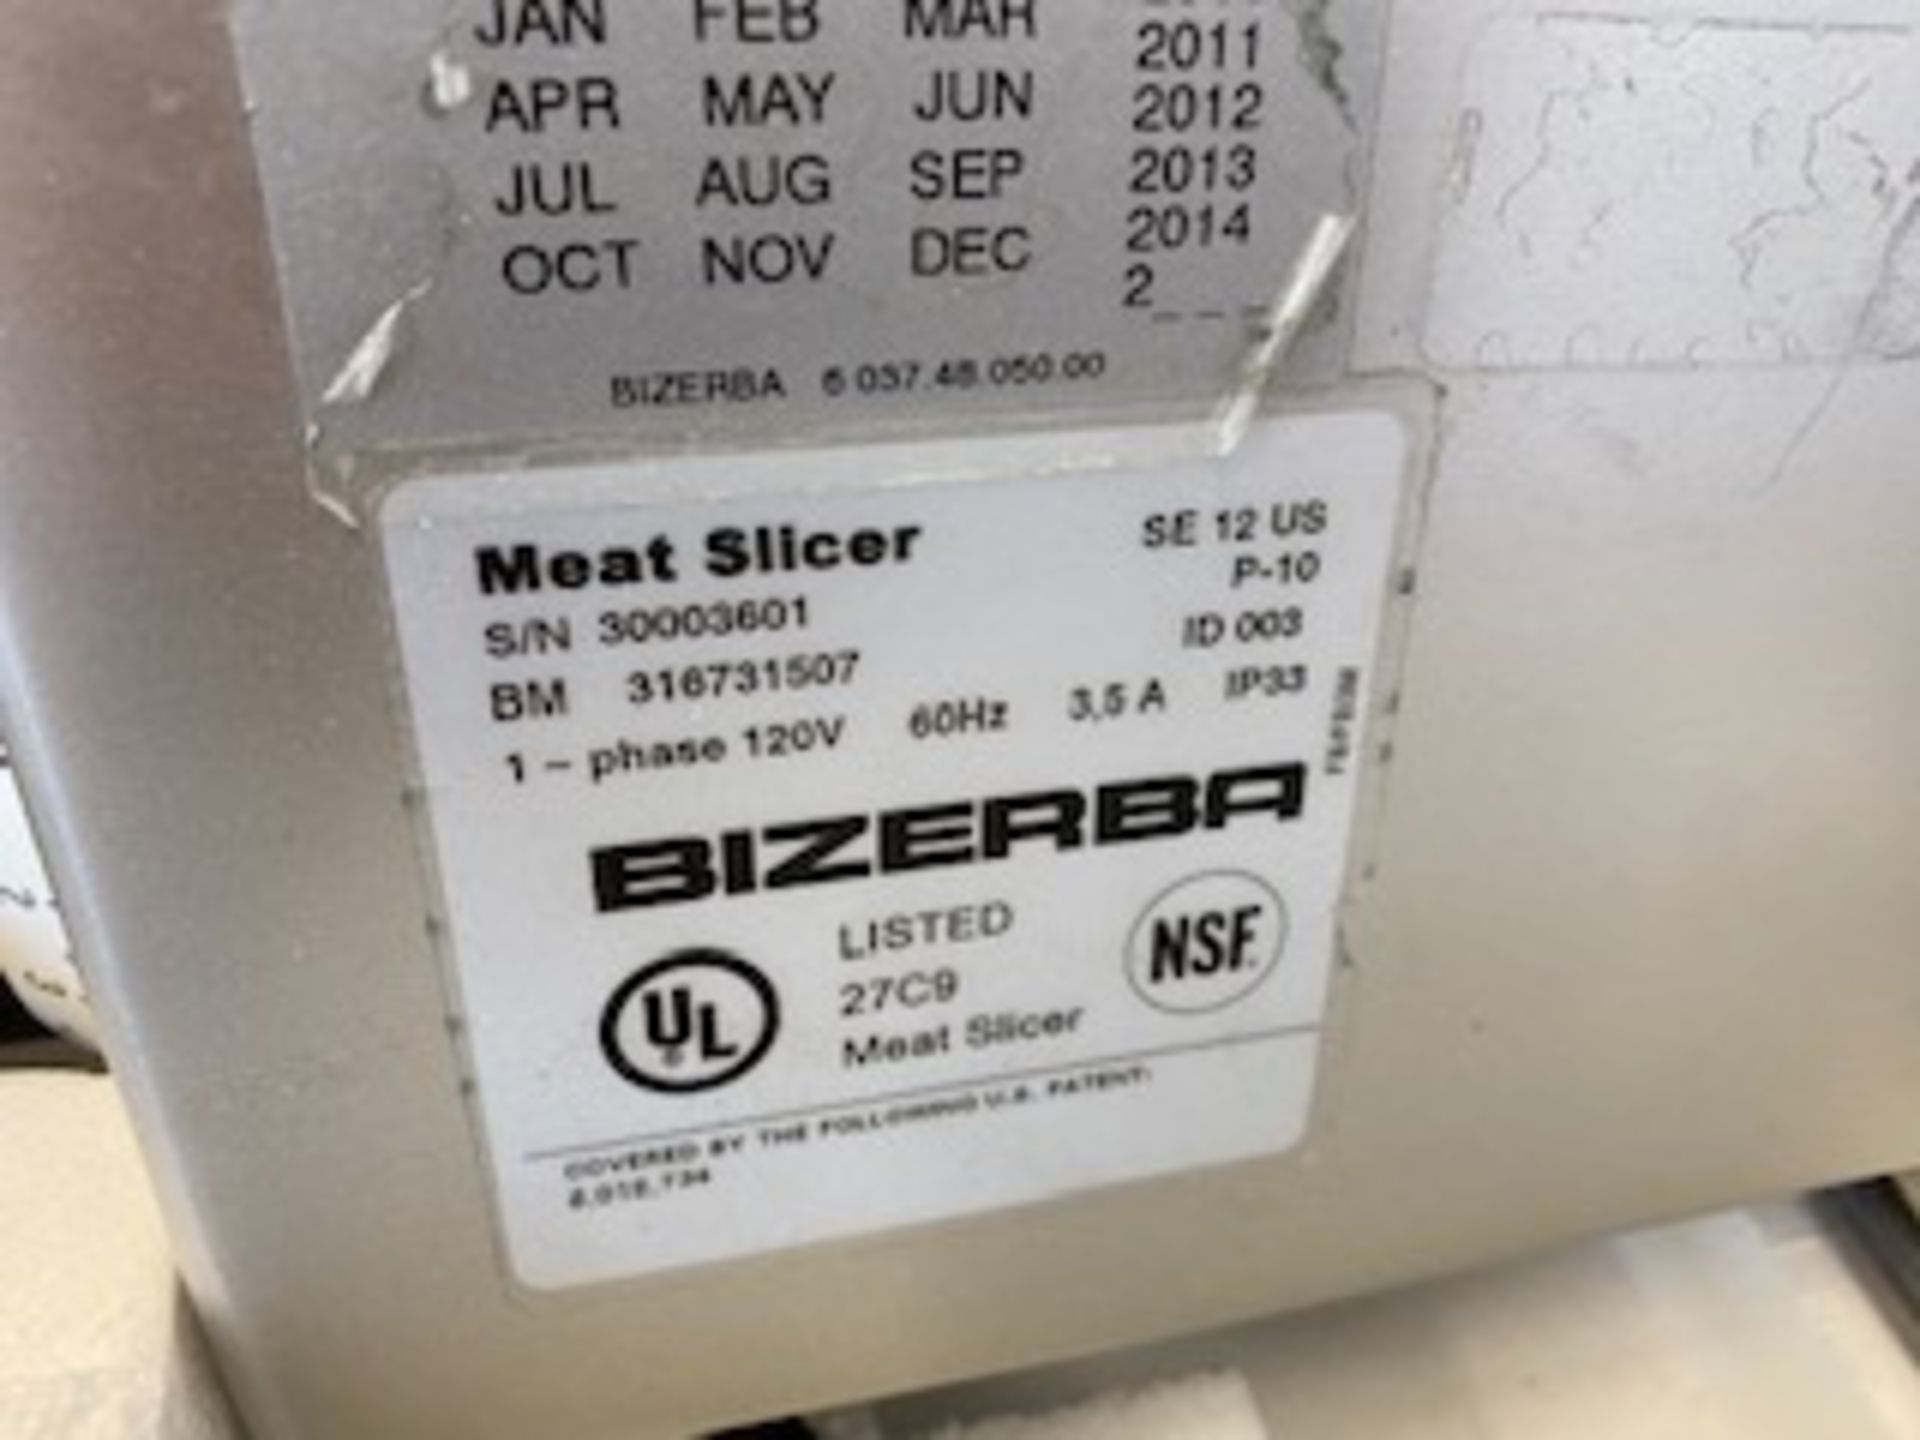 New Bizerba SE12 meat slicer 1ph 120v - Image 2 of 2